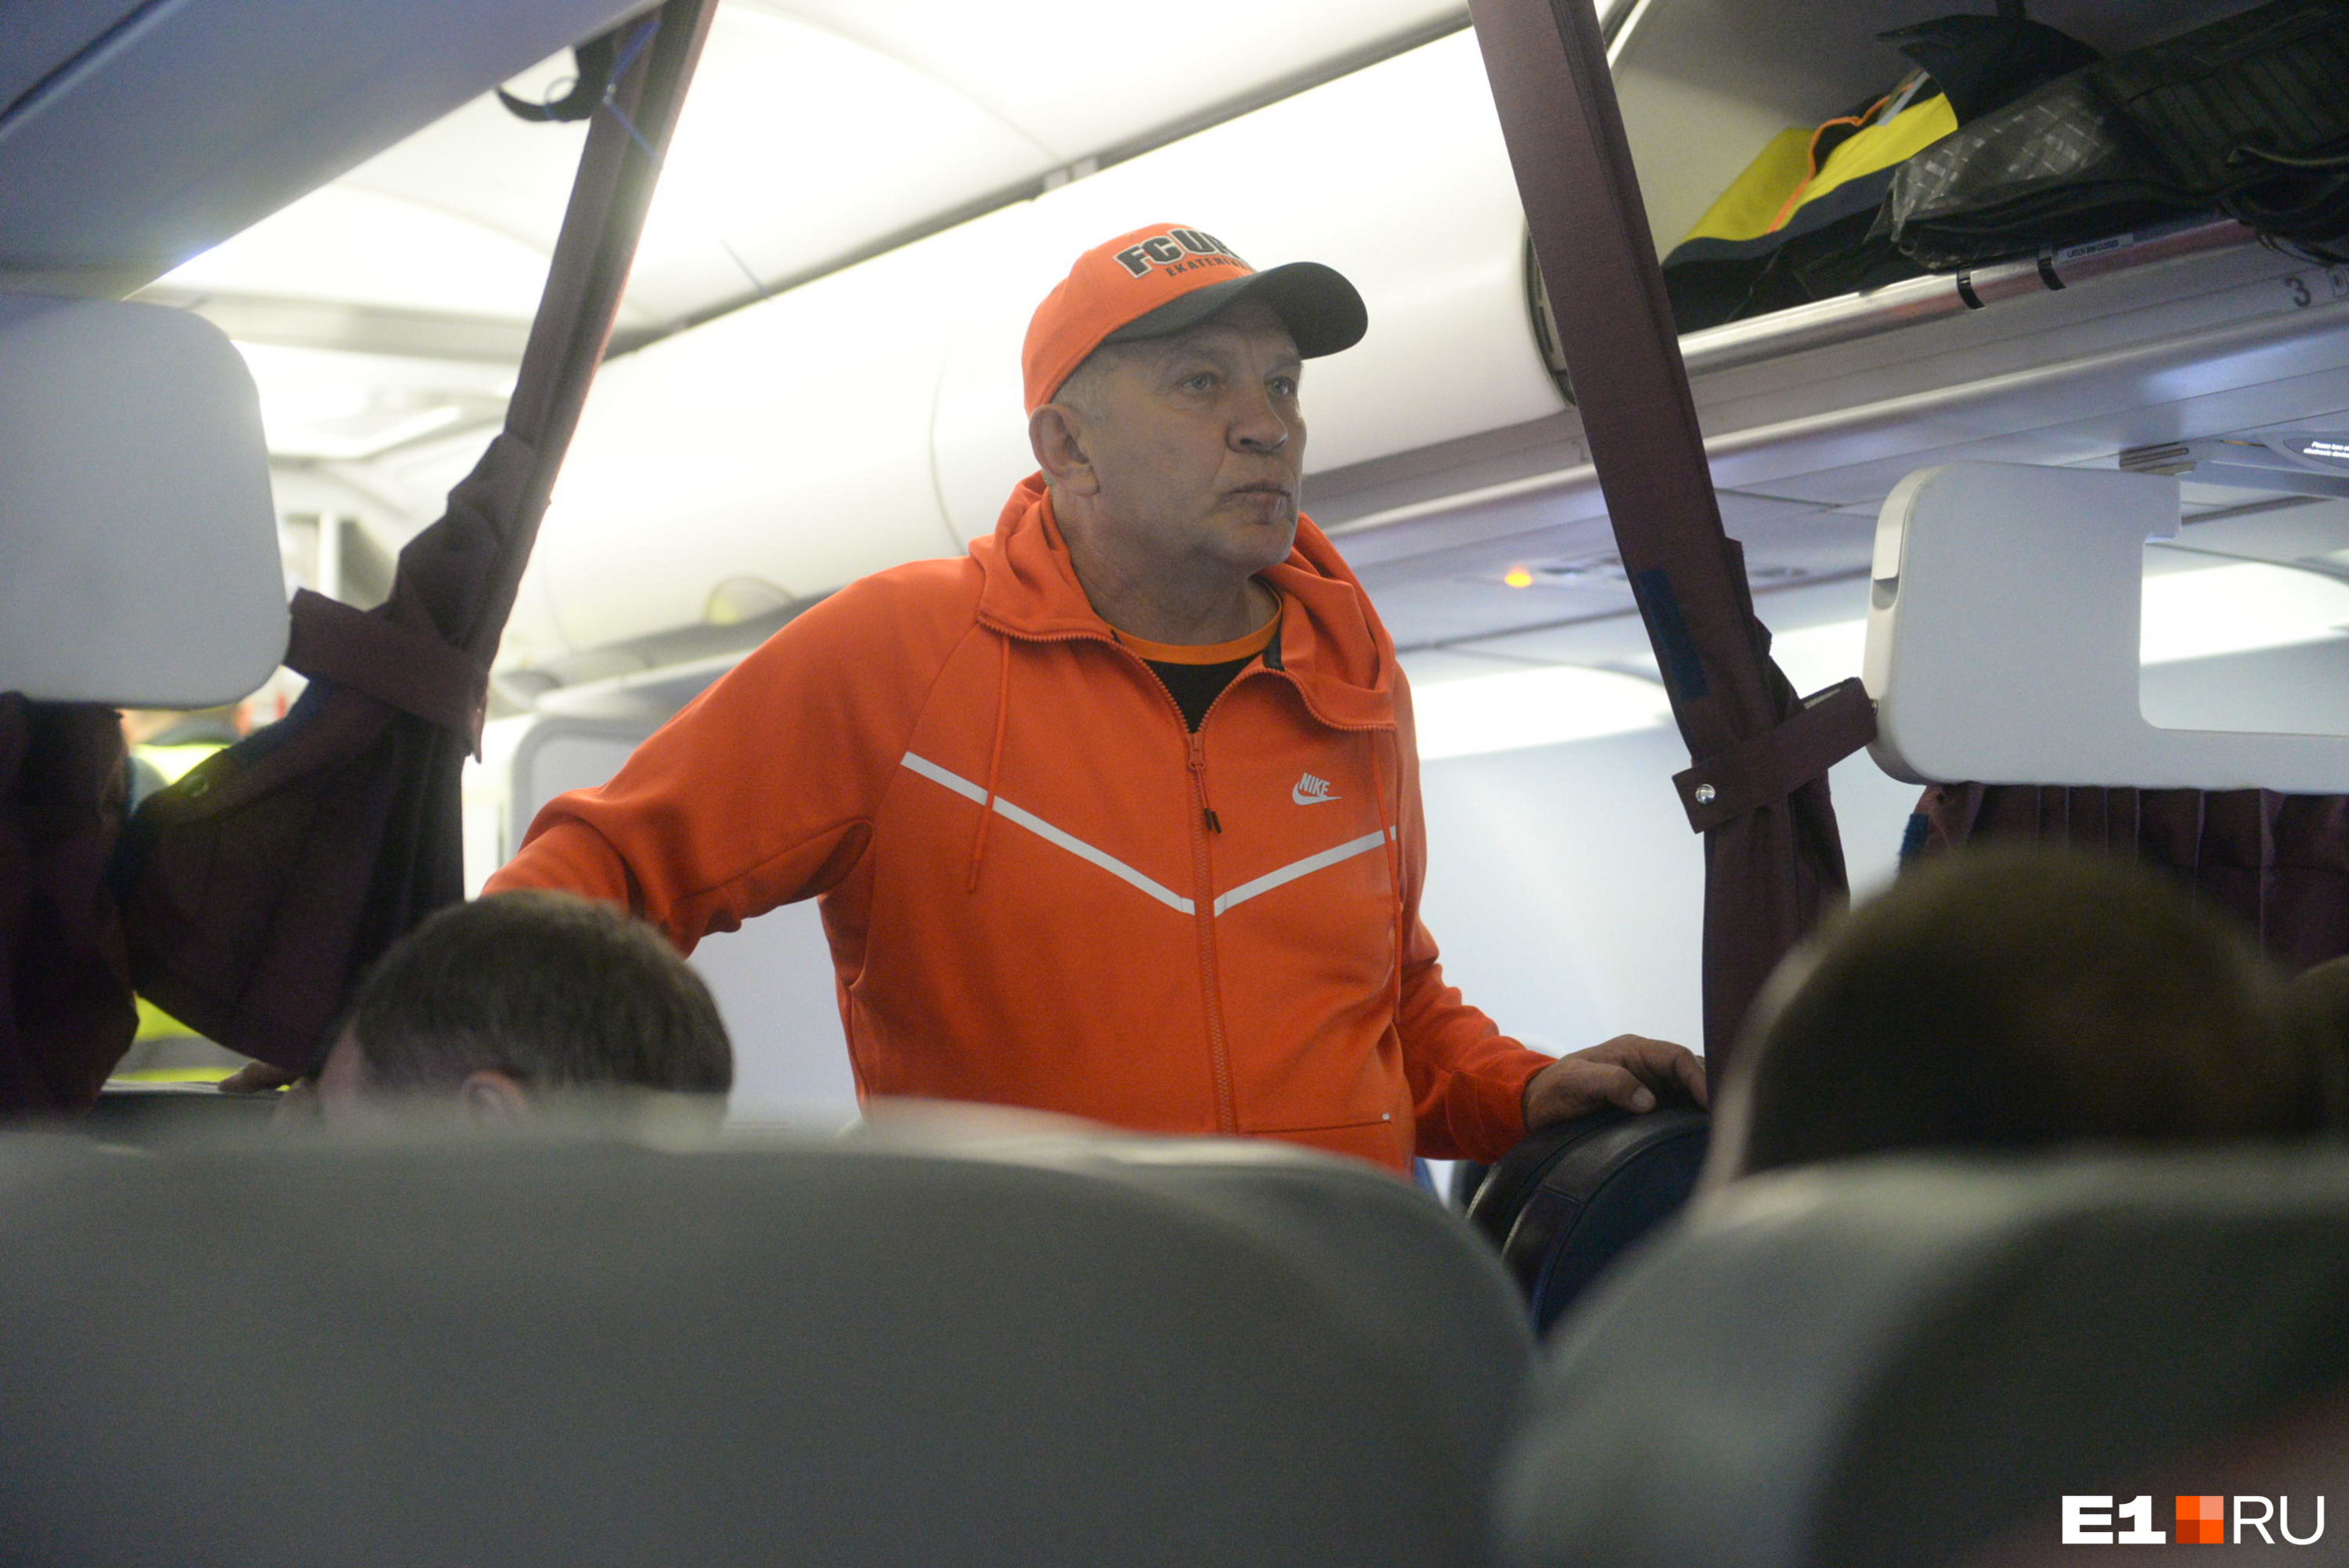 У президента «Урала» Григория Иванова классный костюм позитивного оранжевого цвета 